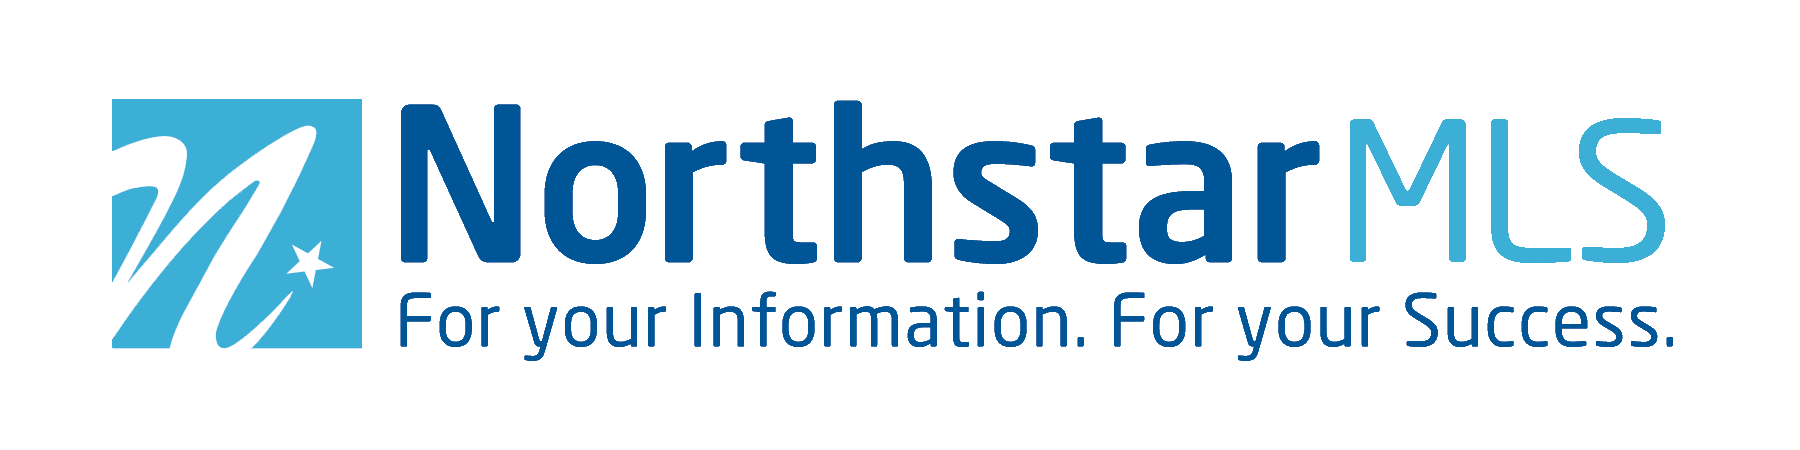 NorthstarMLS logo